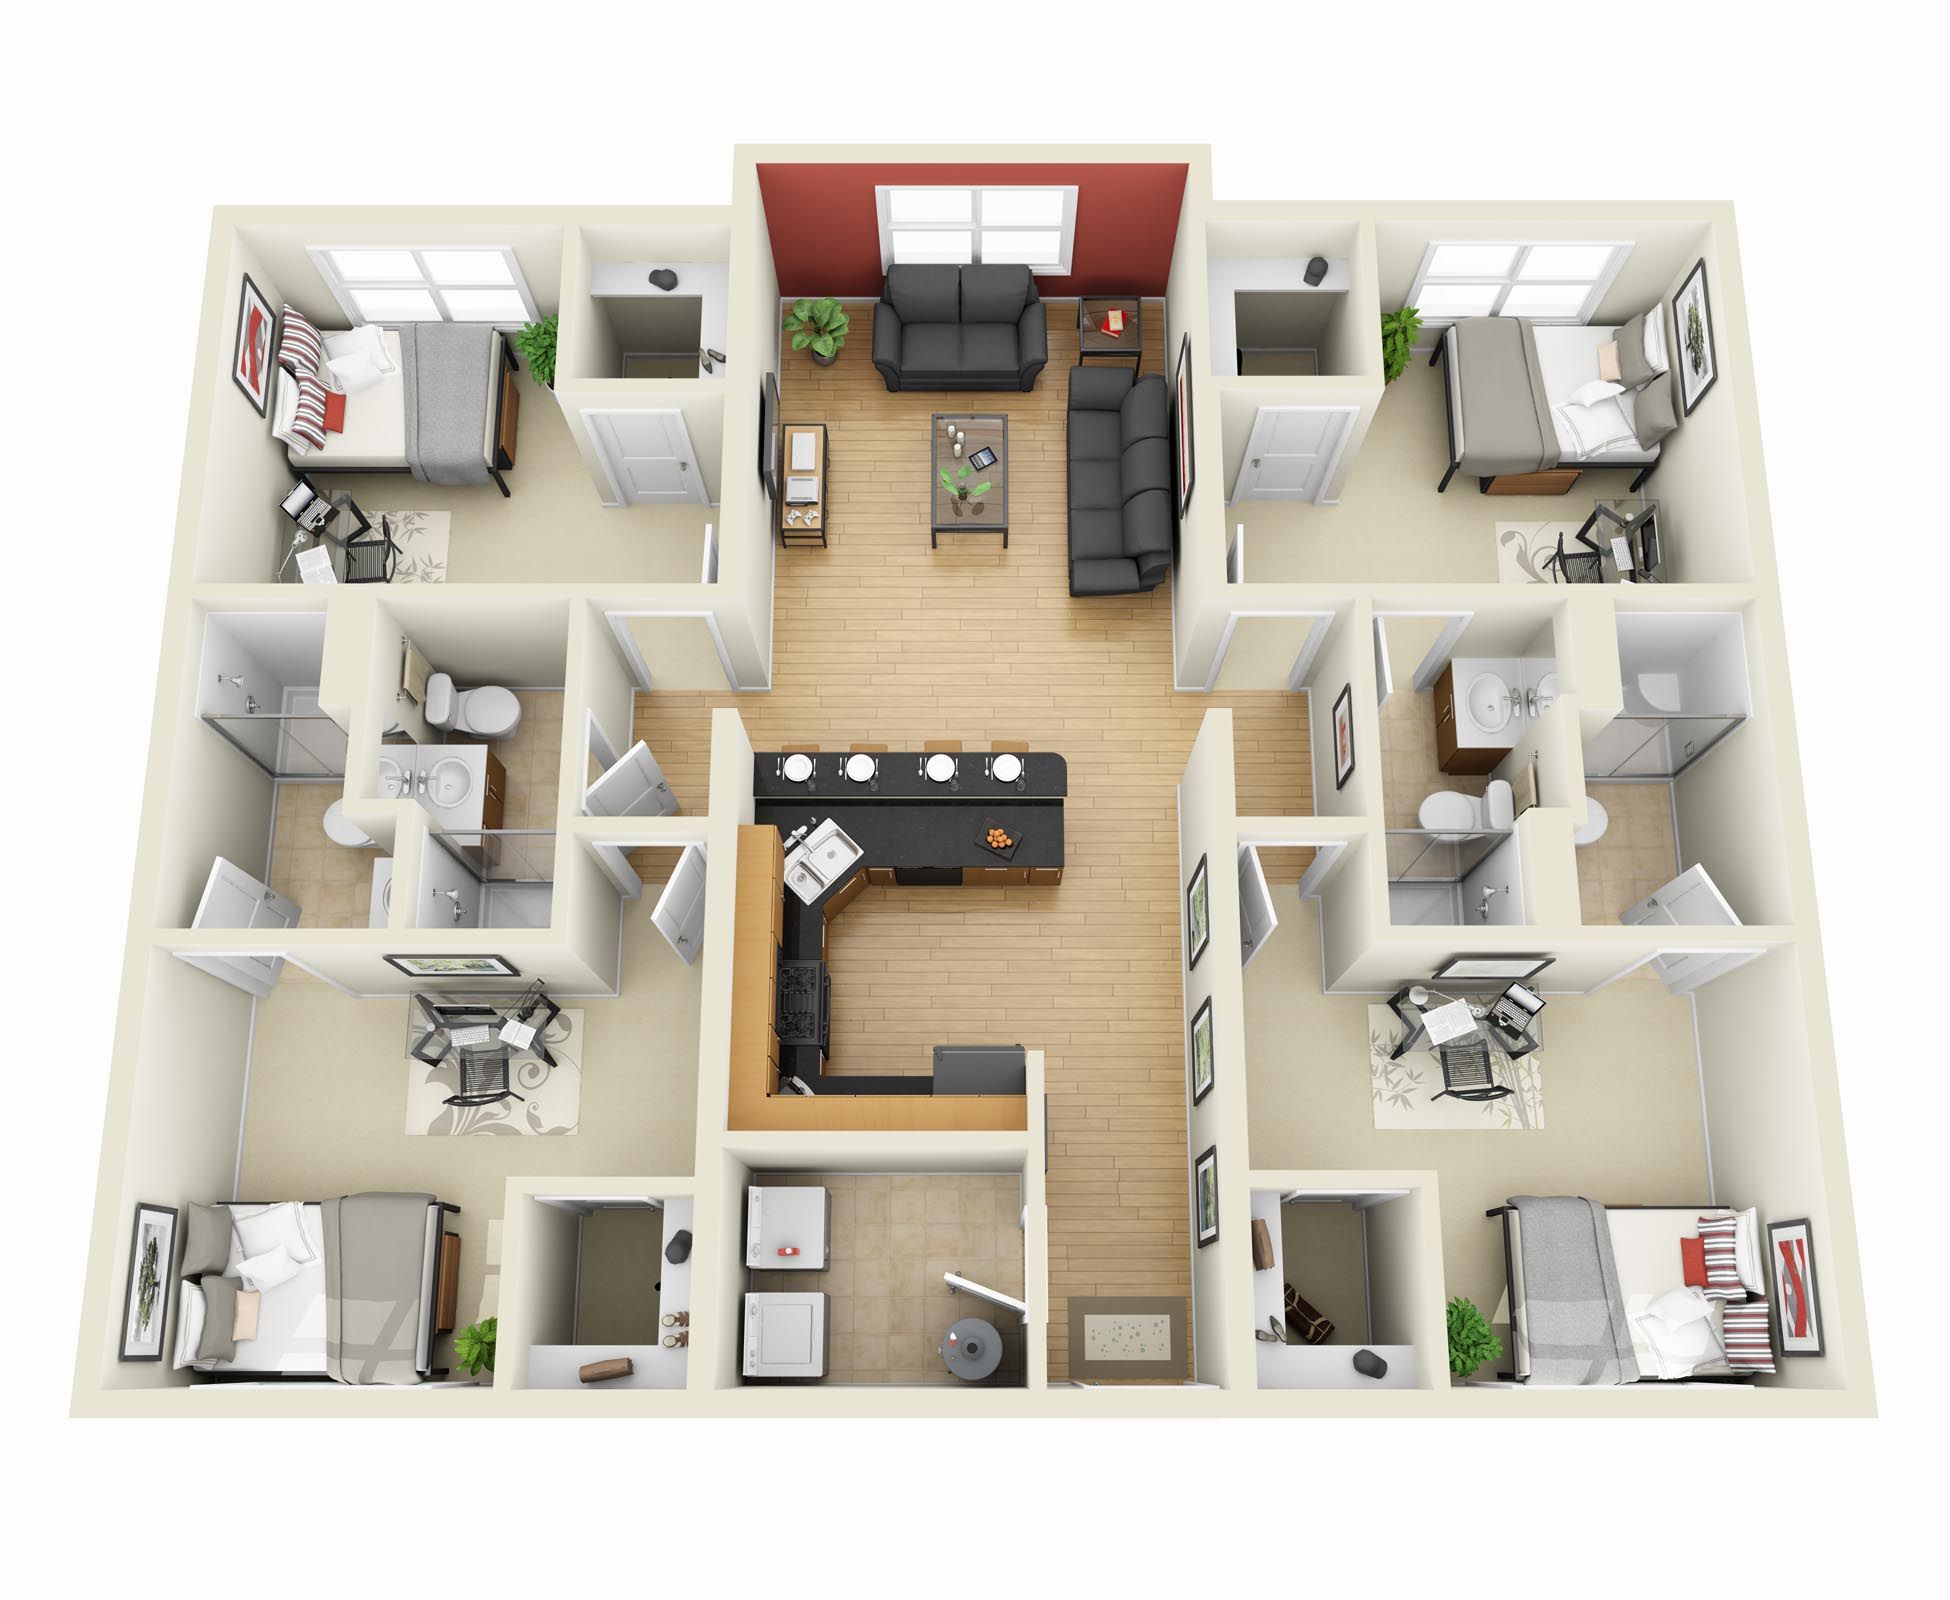 4 Bedroom Apartment/House Plans 3d house plans